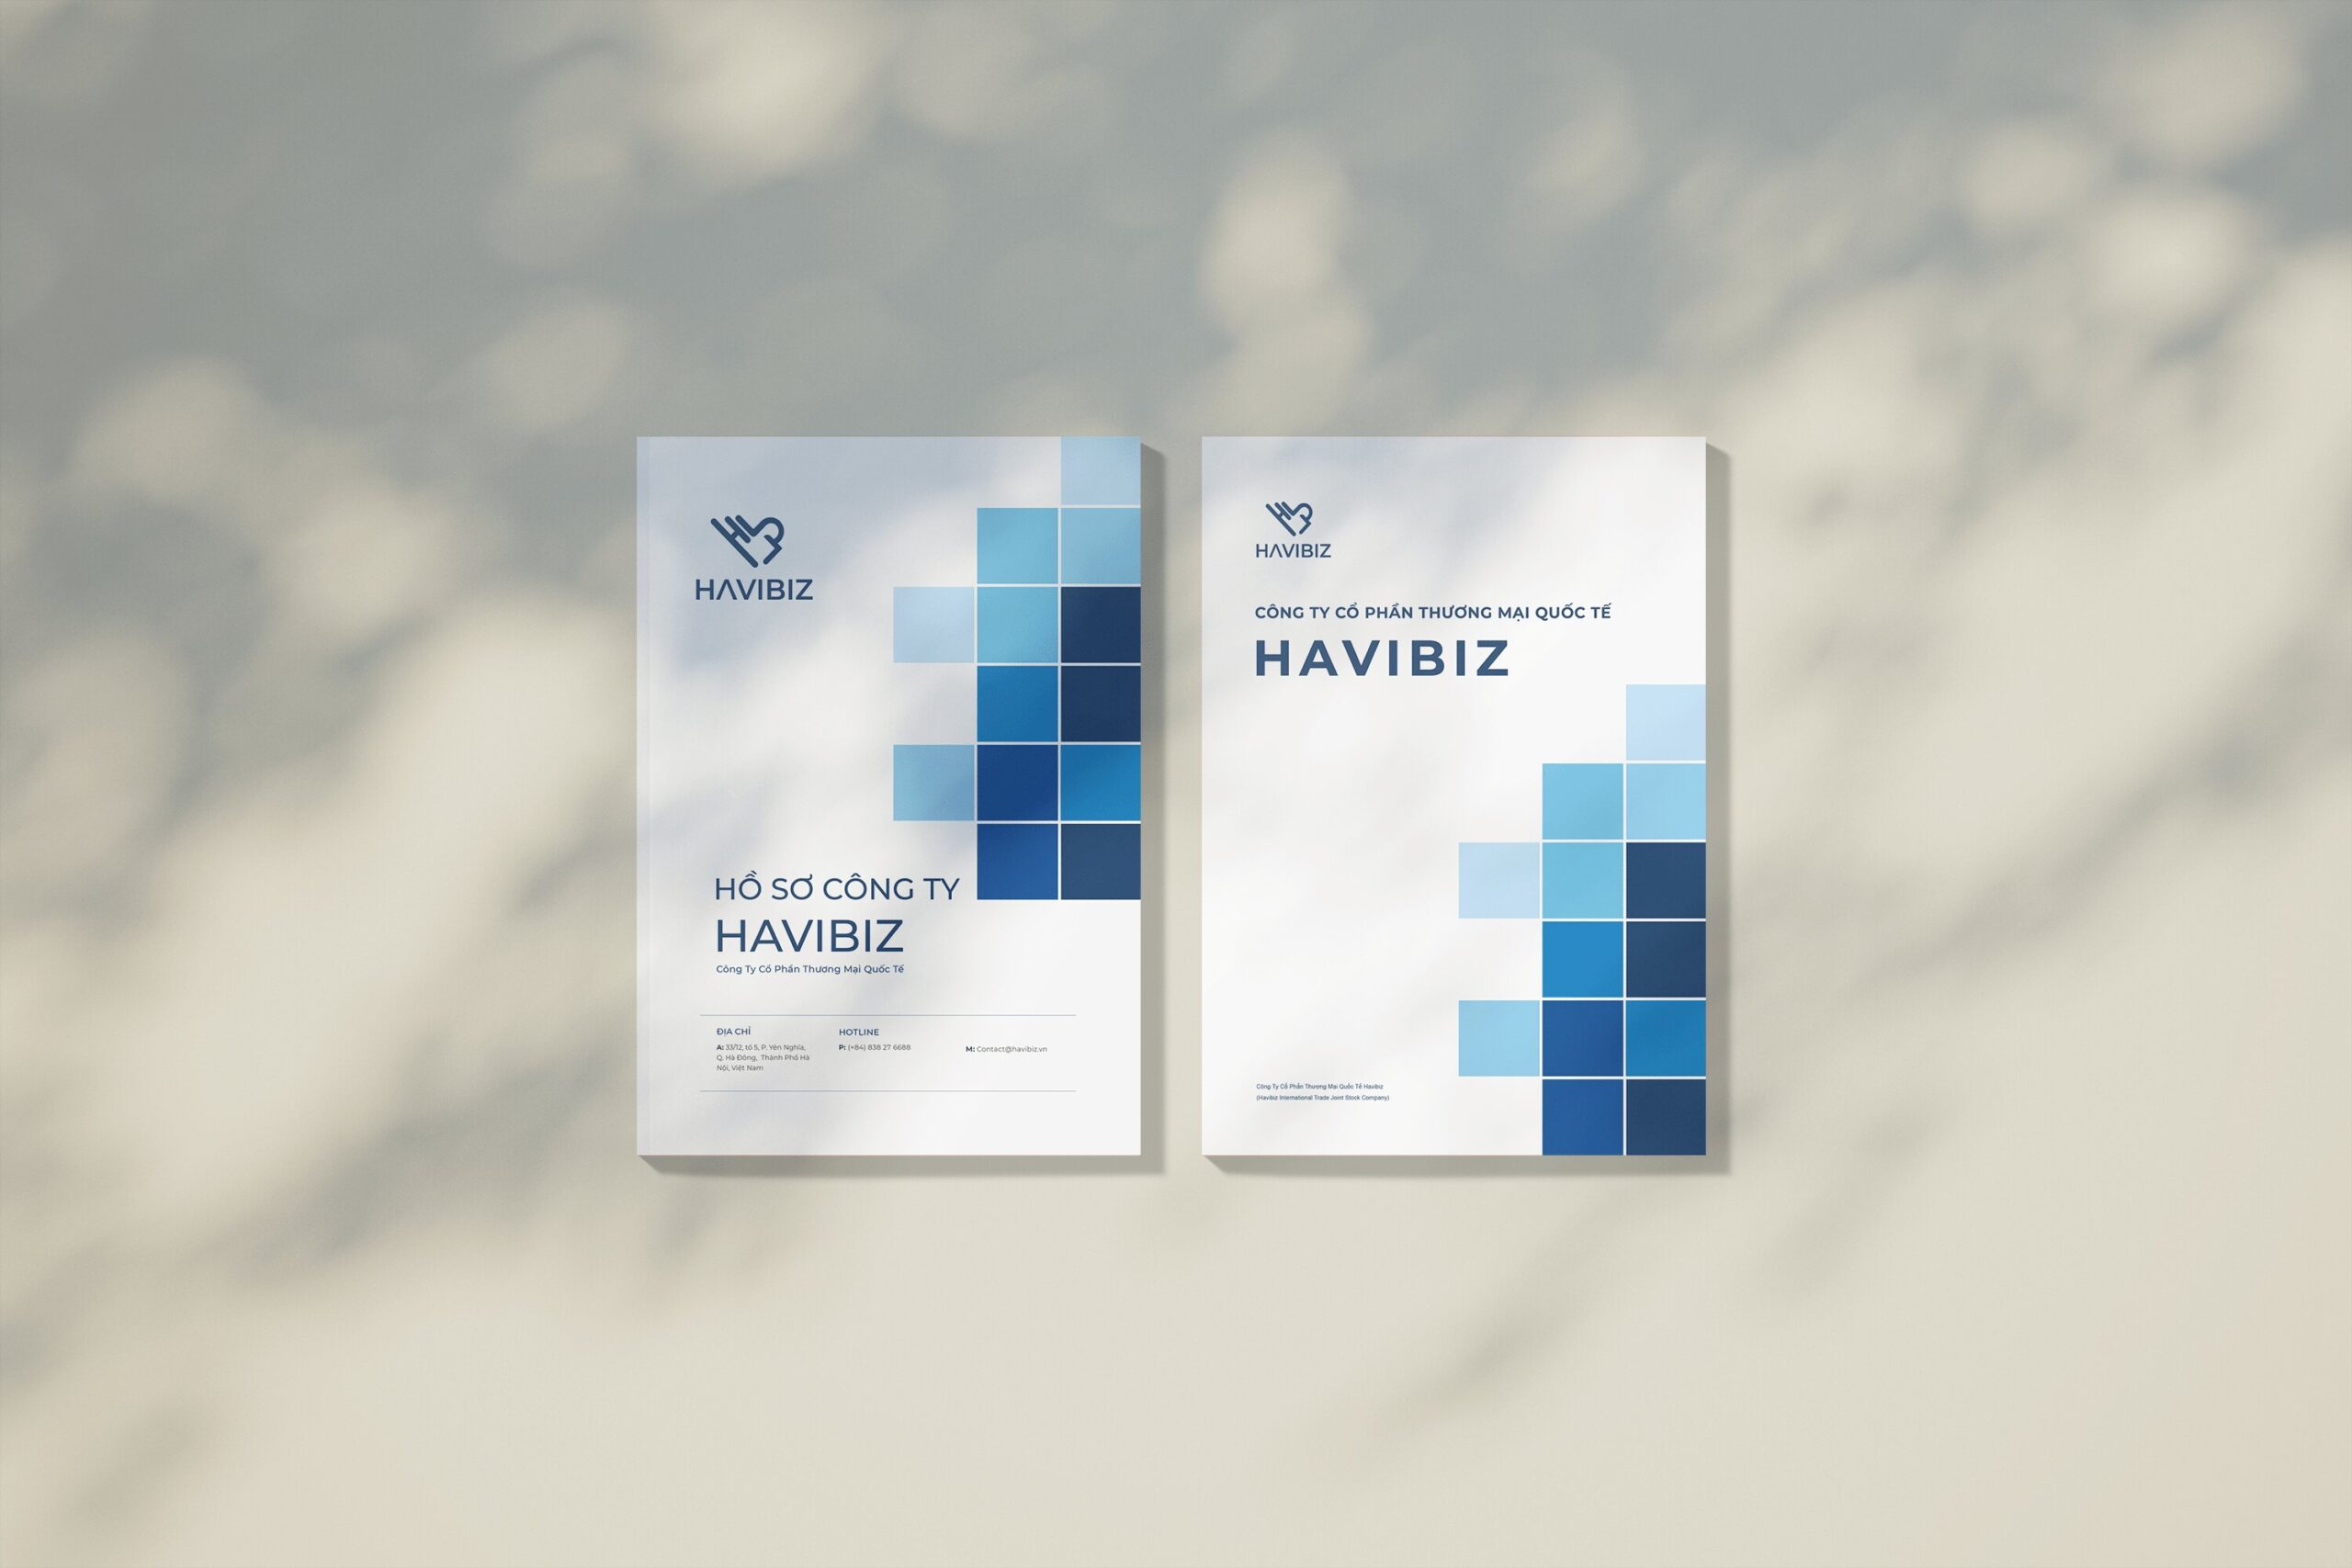 Profile thương mại quốc tế Havibiz